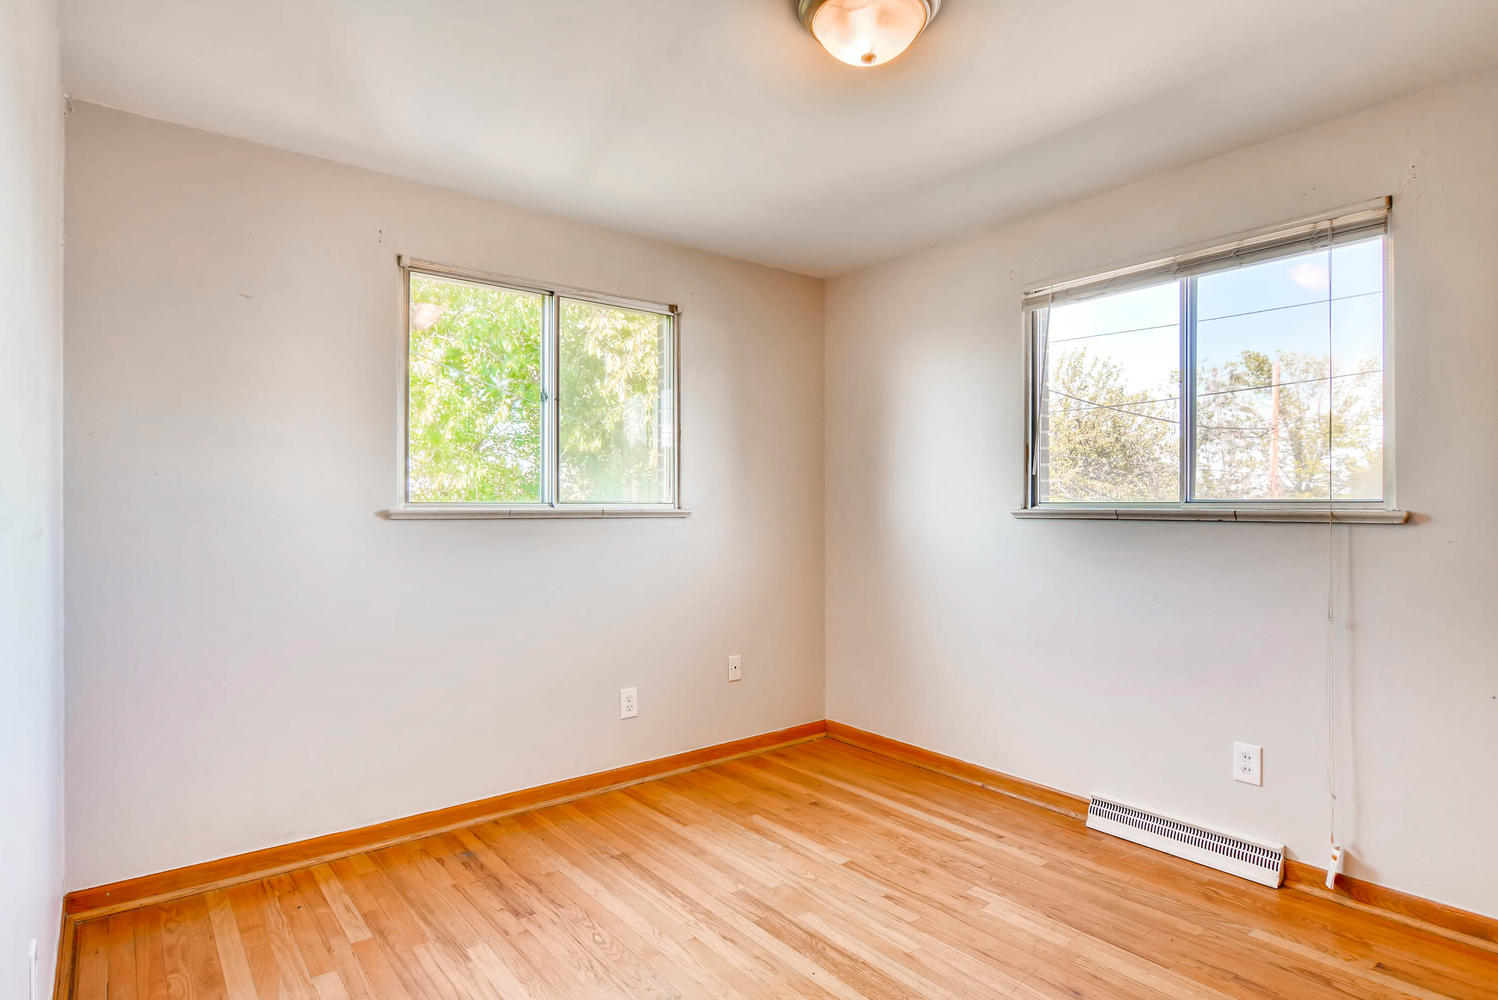 Real Estate Listing: 8305 Mitze Way Denver Bedroom #2